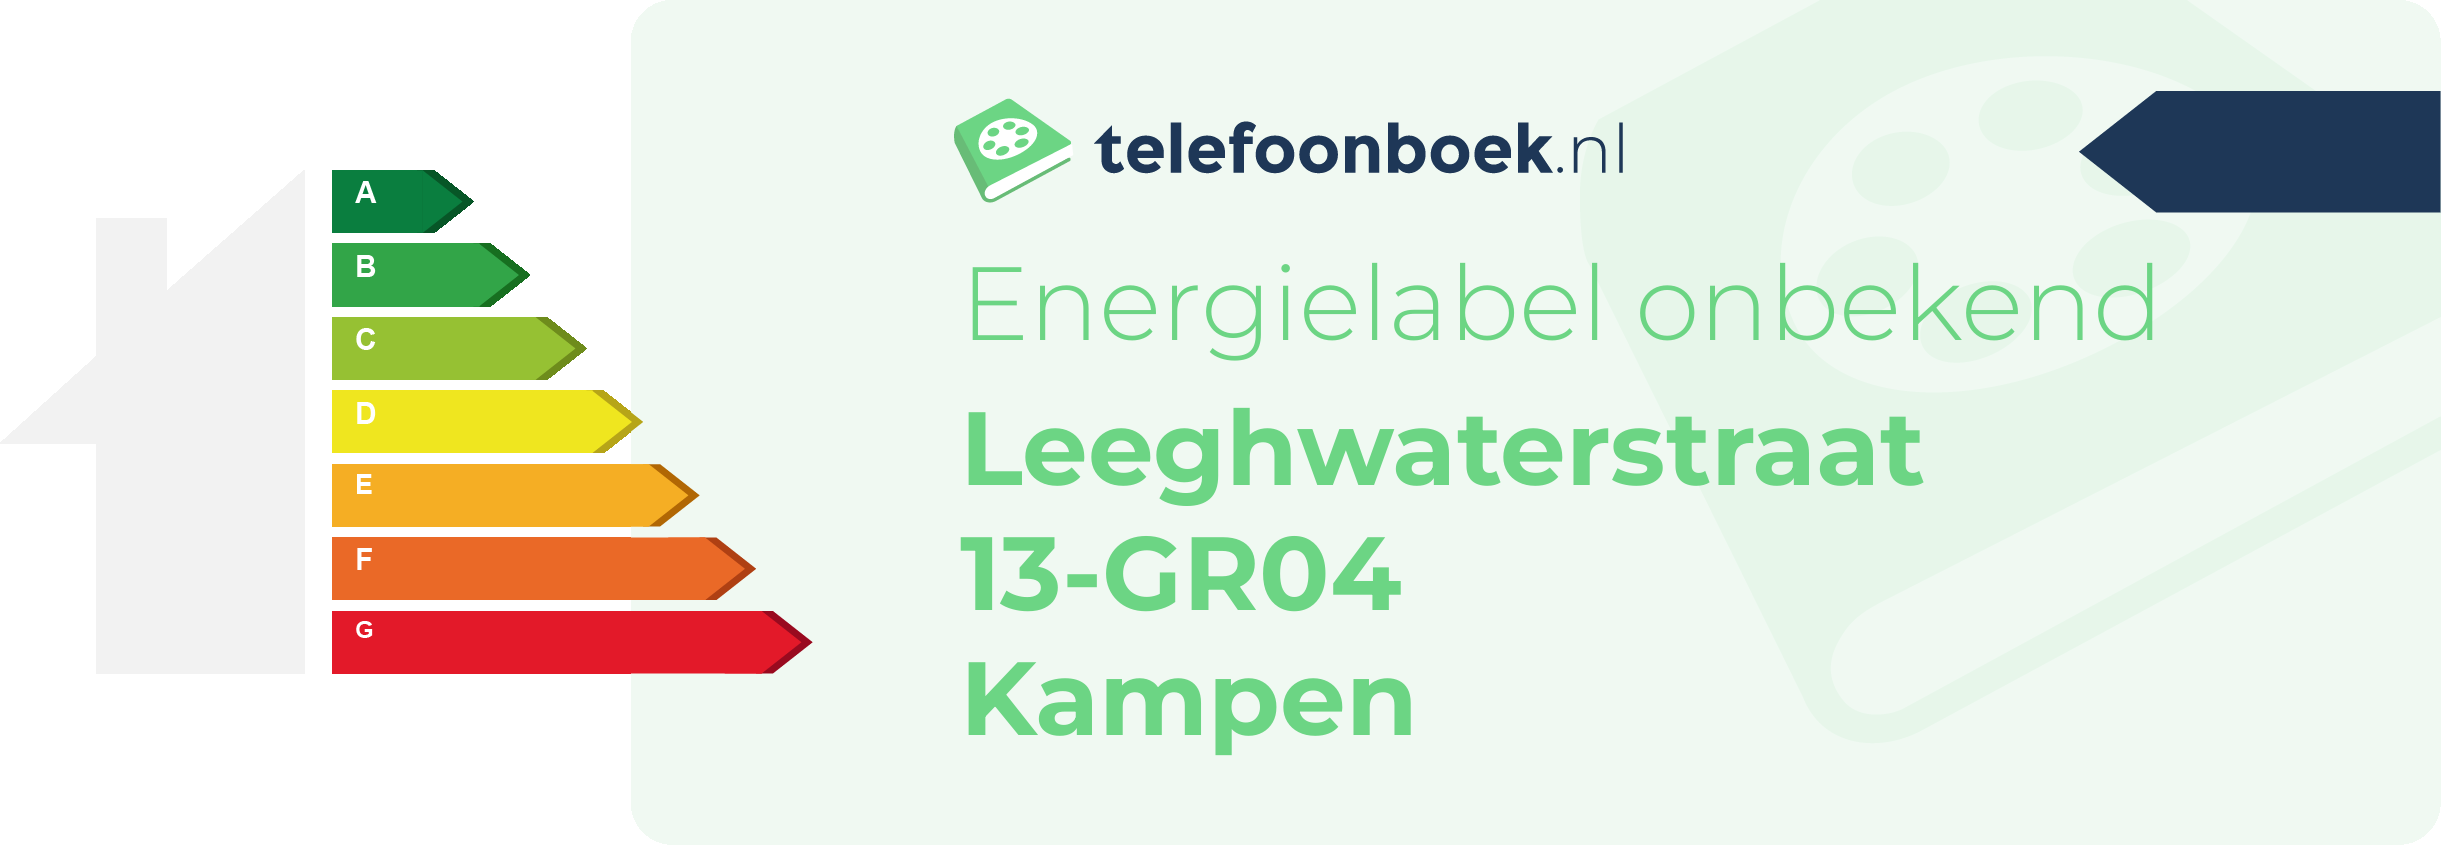 Energielabel Leeghwaterstraat 13-GR04 Kampen